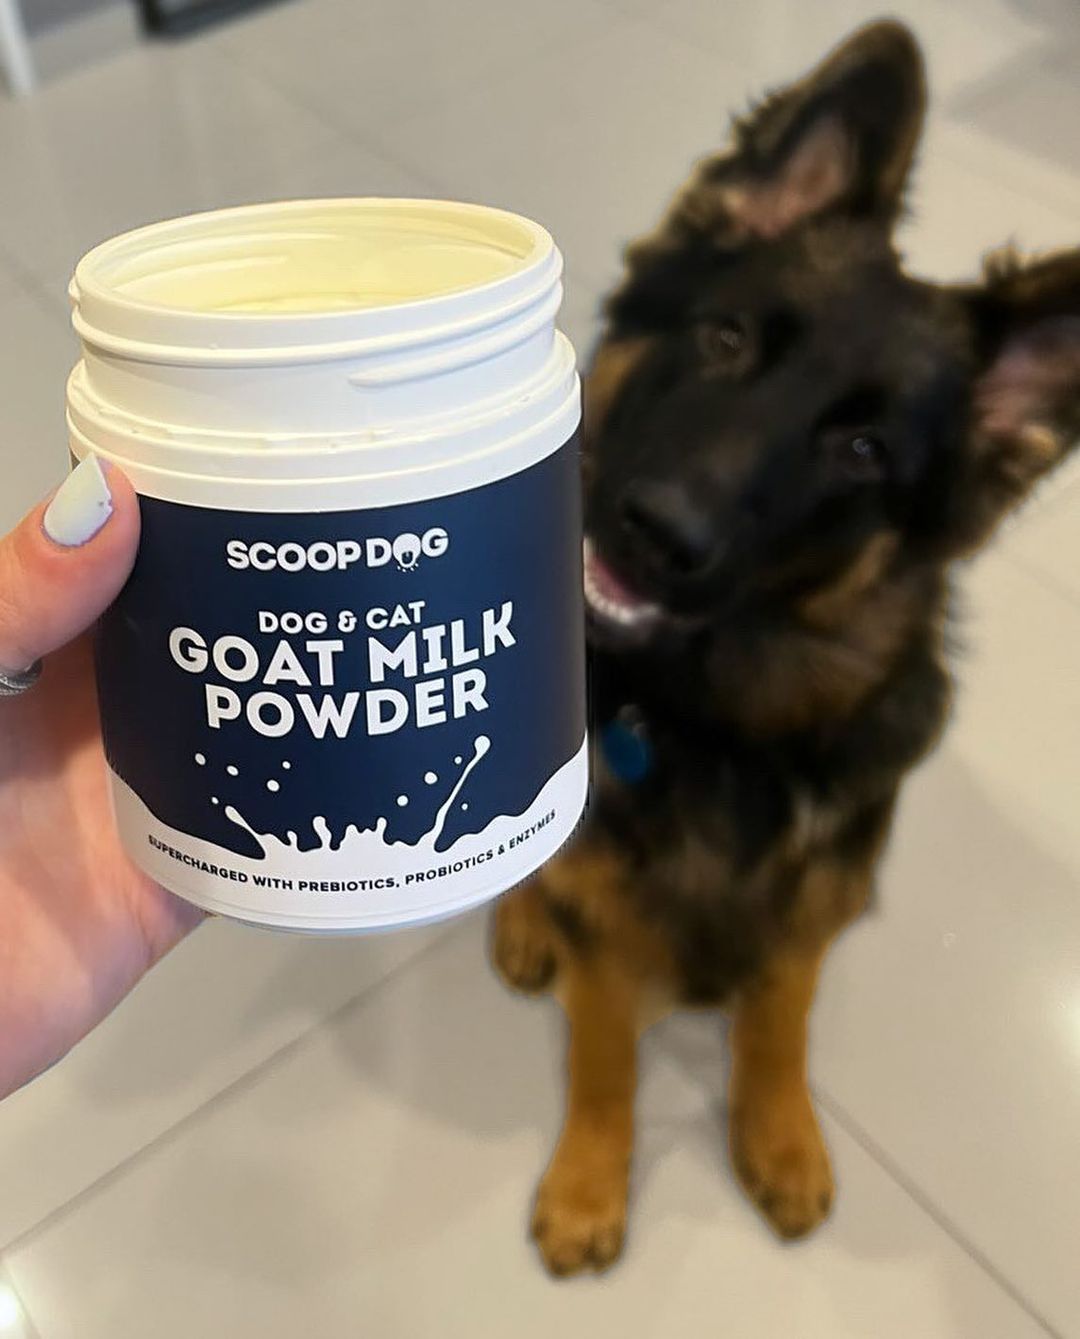 Goat Milk Powder 200g